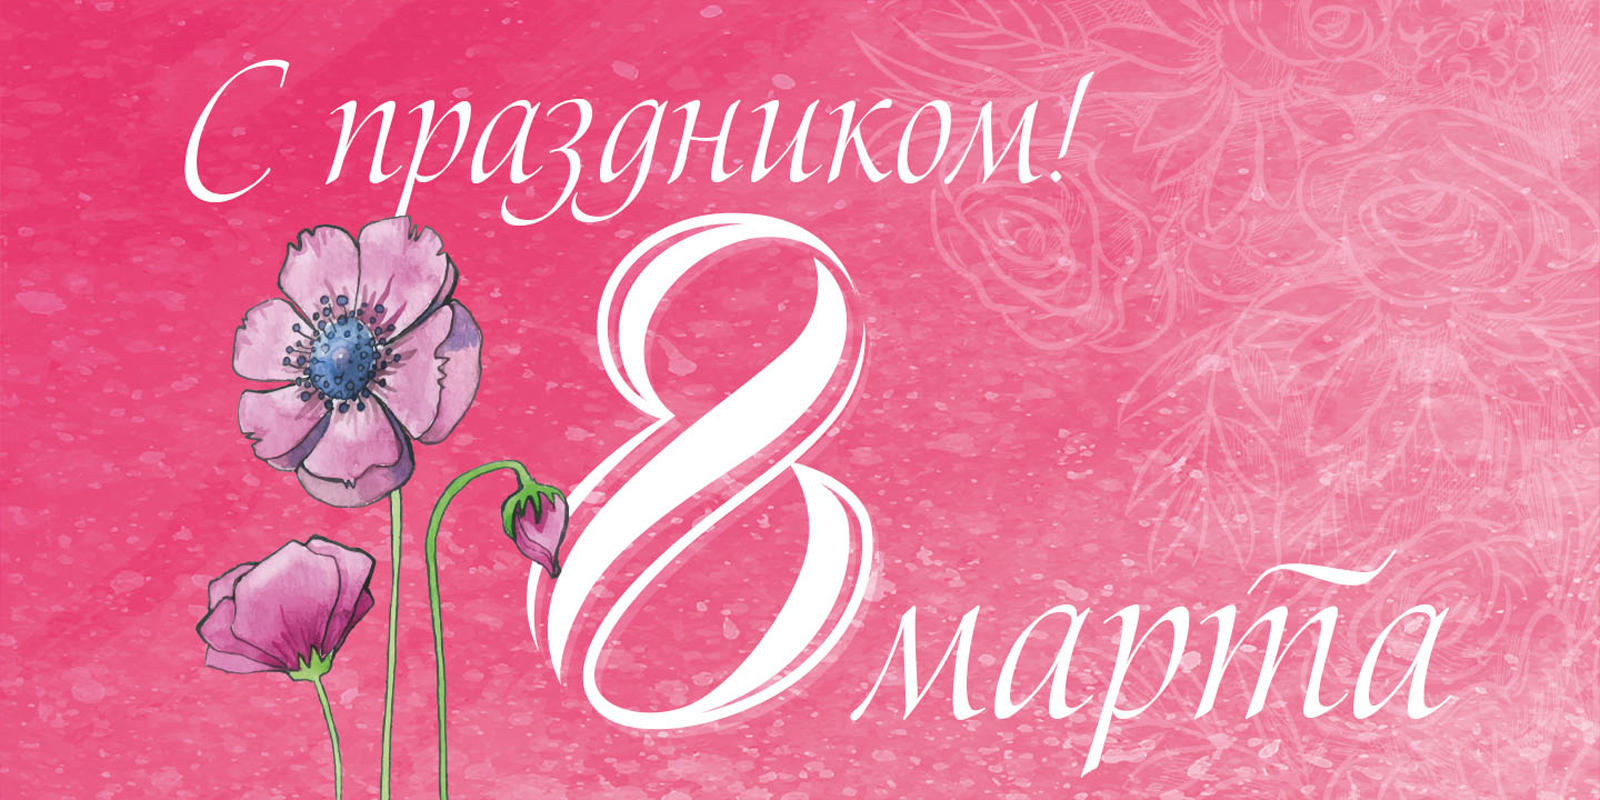 Женщин Москворечья-Сабурова поздравят праздничными билбордами, которые появятся на улицах района в канун 8 марта